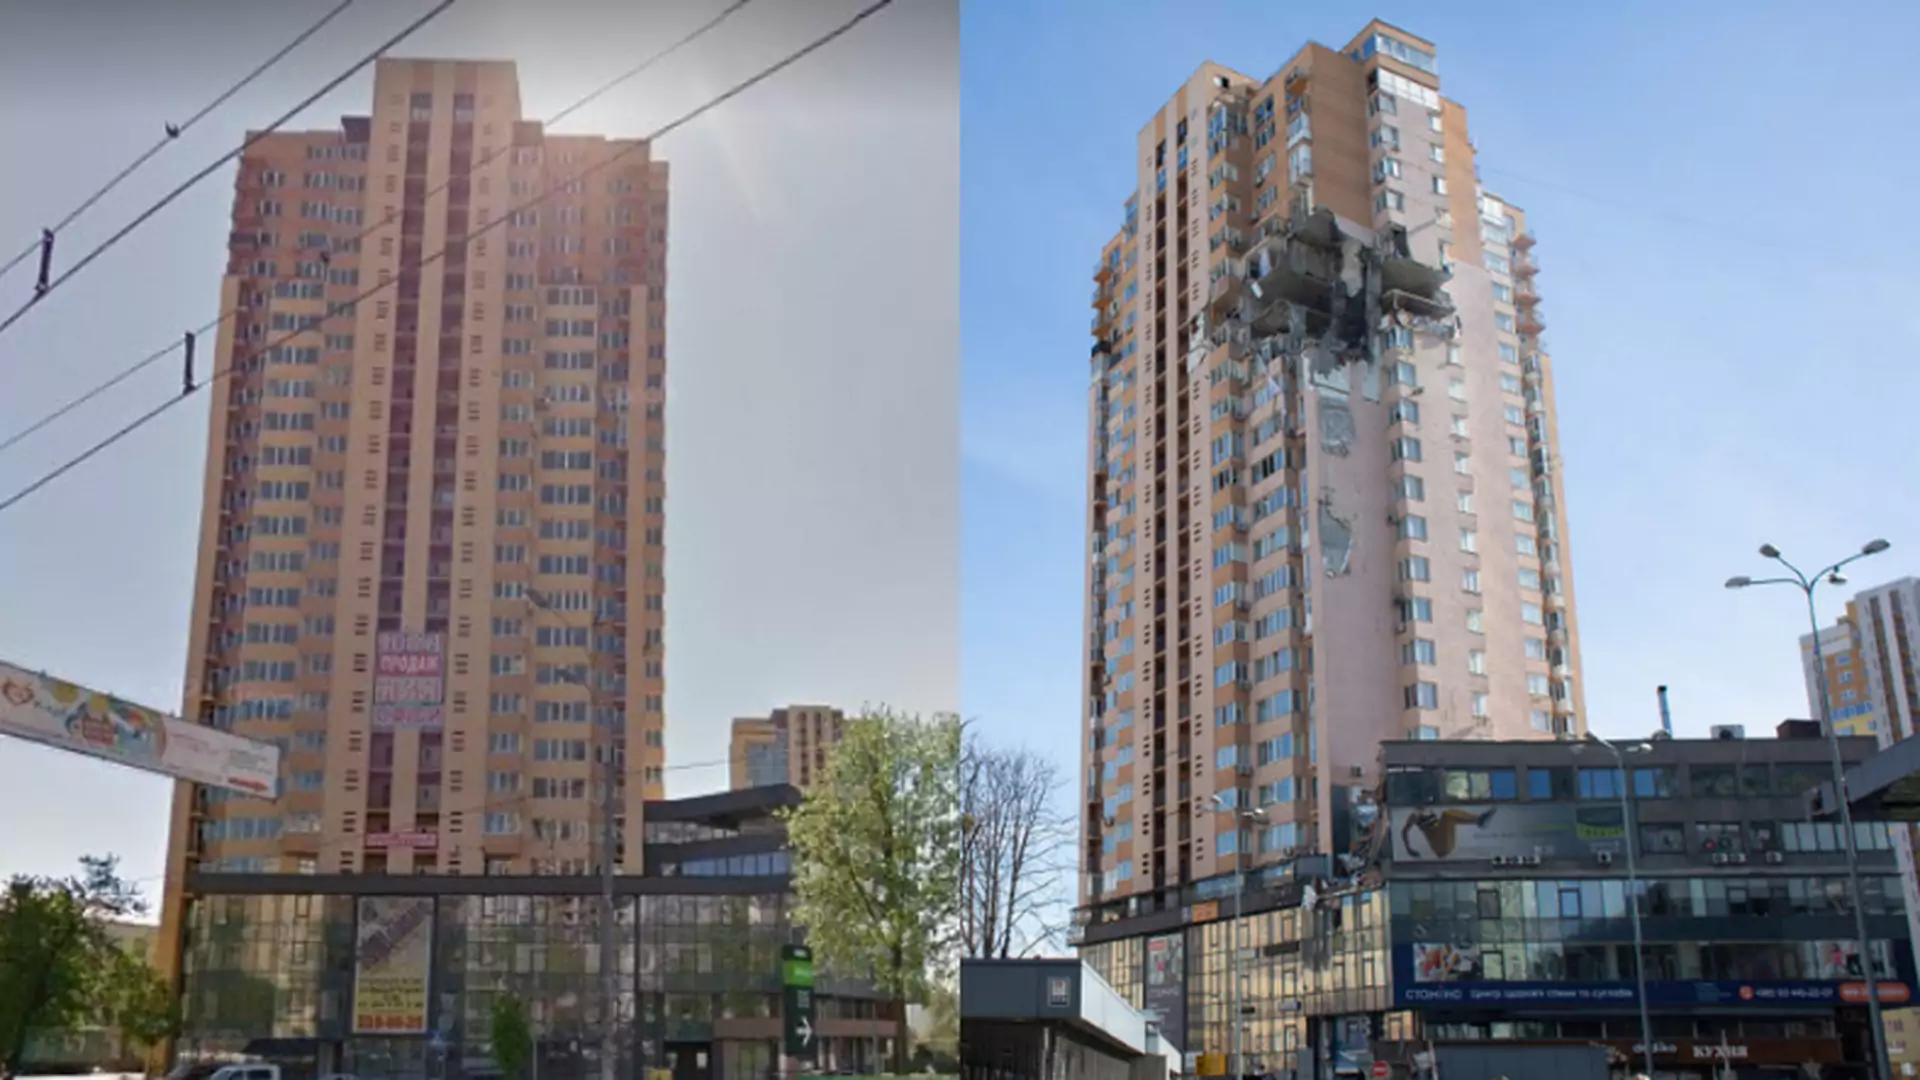 Zdjęcia sprzed i po ataku Rosjan. Te budynki zostały doszczętnie zniszczone [galeria]